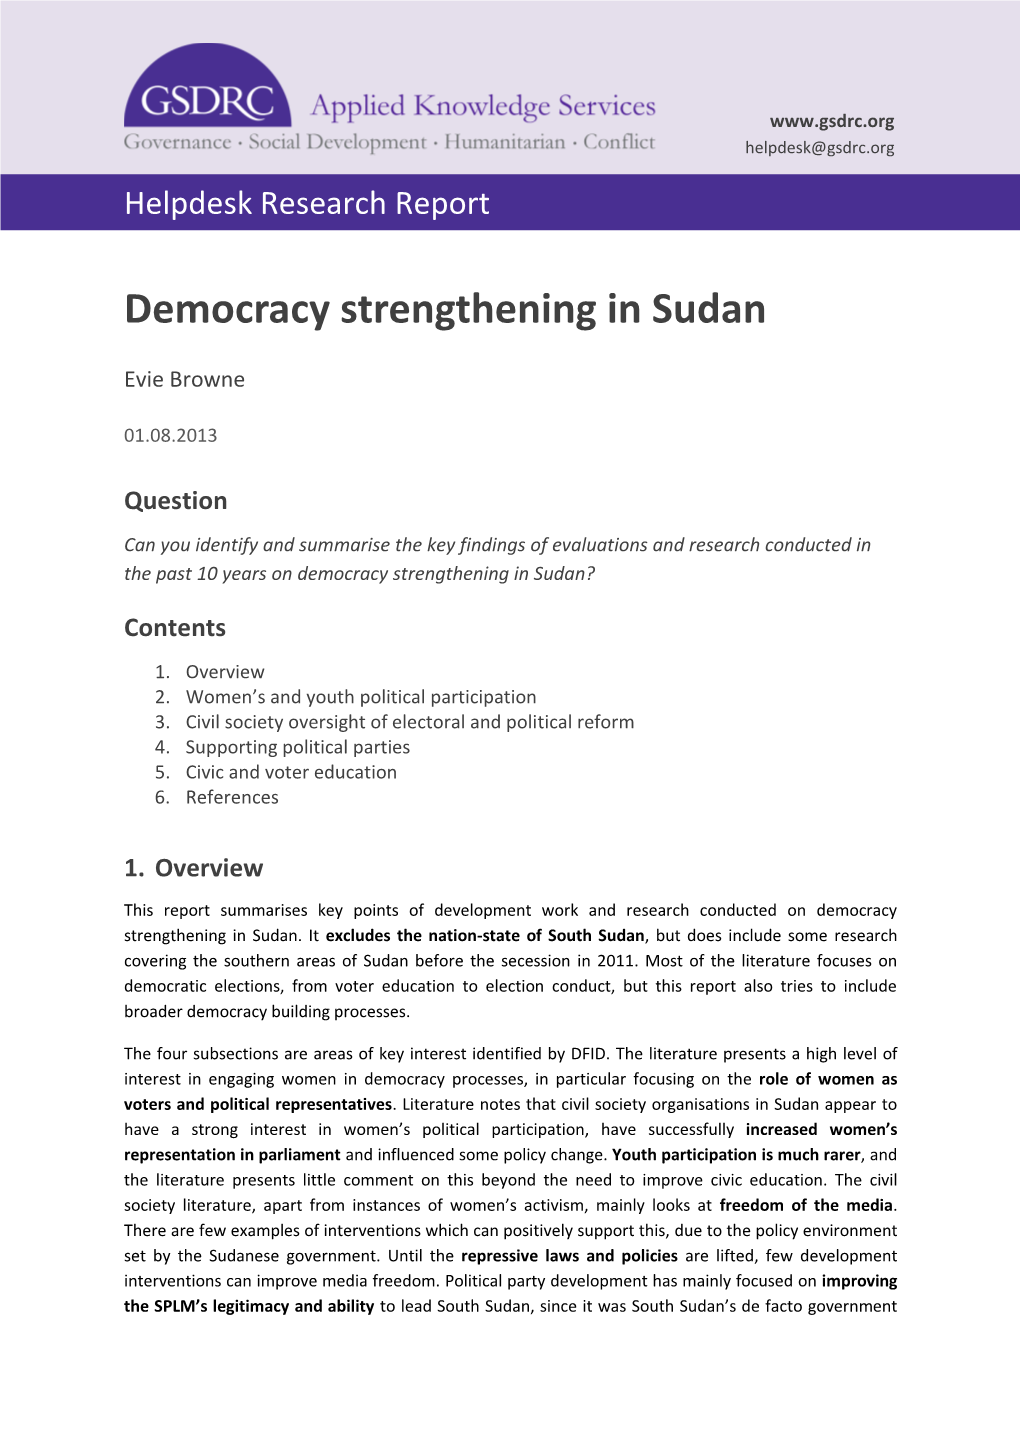 Democracy Strengthening in Sudan